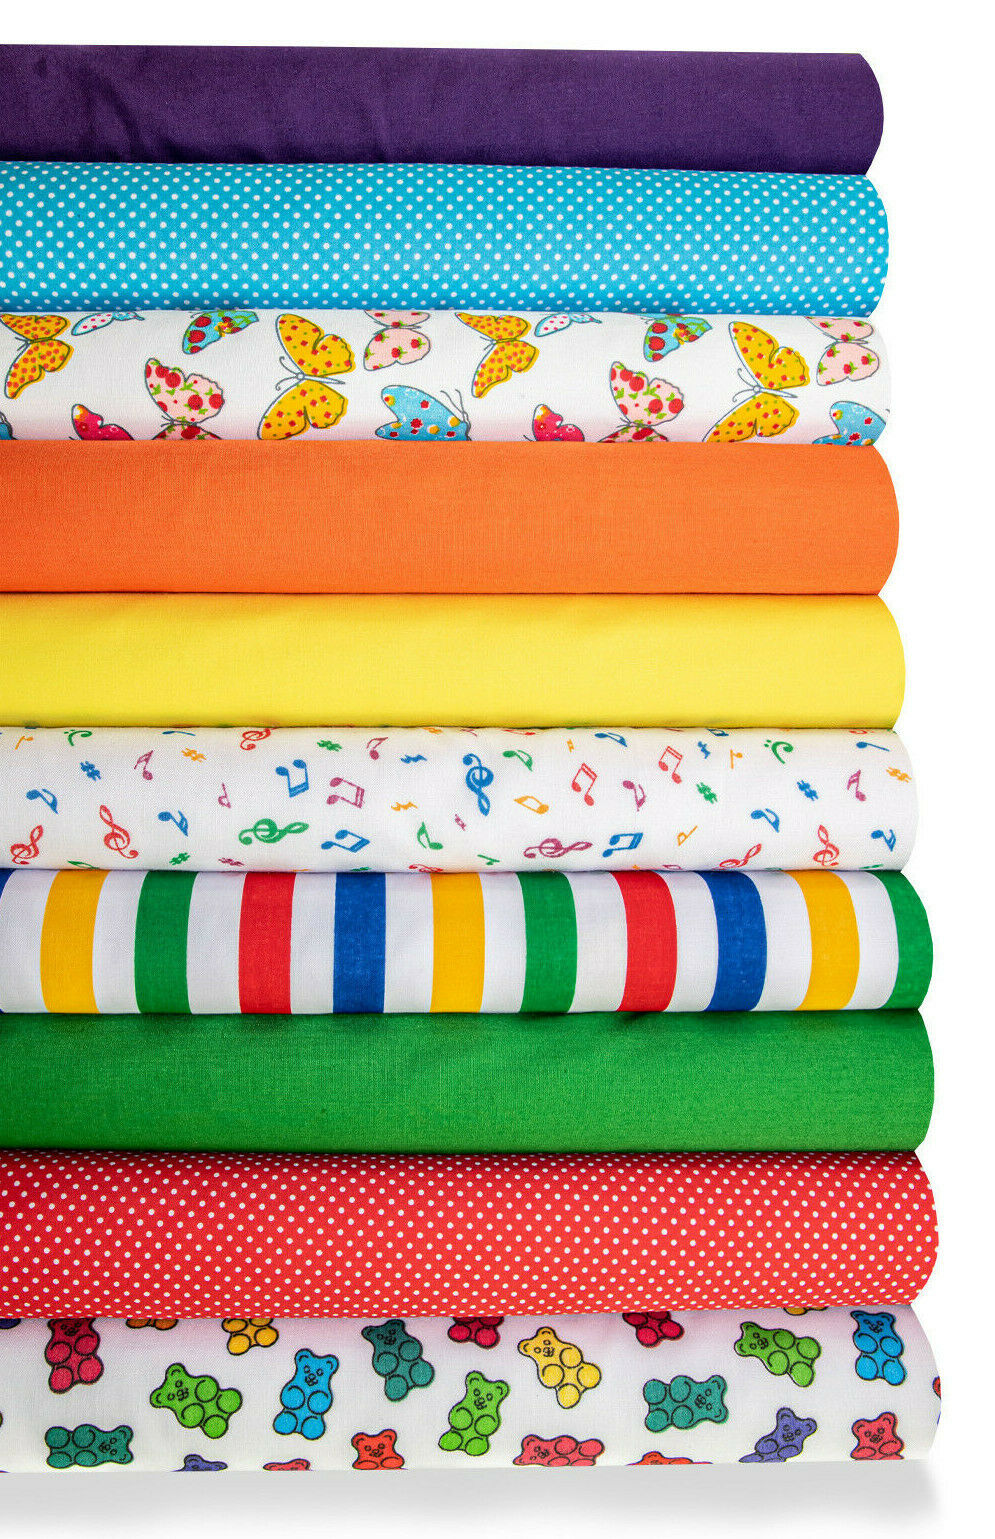 10 x Polycotton Fat Quarter Fabric Bundle | Children Assortment Plain Spotty Stripes